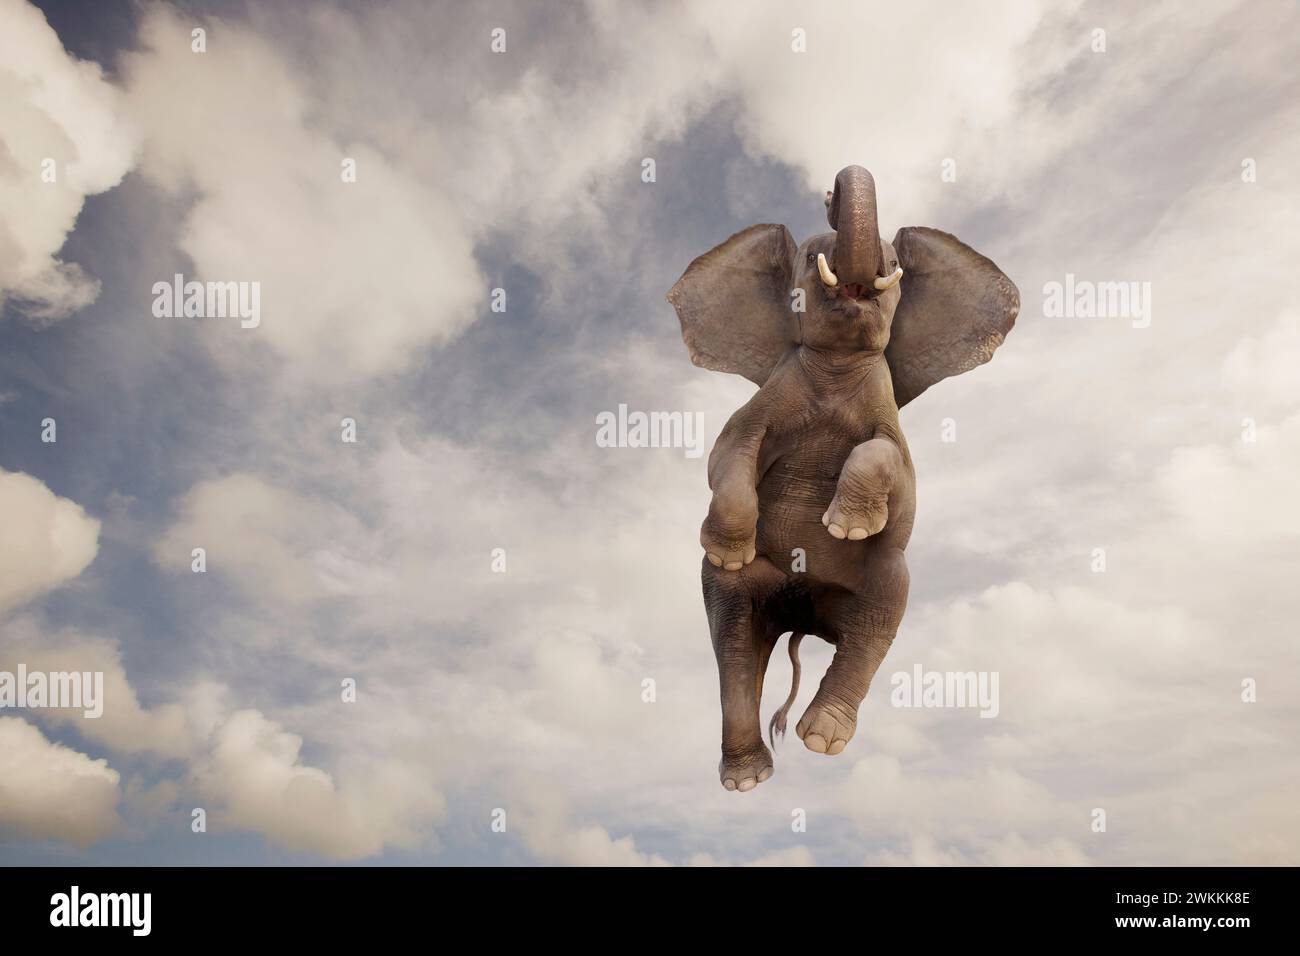 Un éléphant s'élève à travers le ciel Dumbo comme dans une image drôle sur les compétences et les capacités inattendues, bizarres, uniques et inhabituelles Banque D'Images